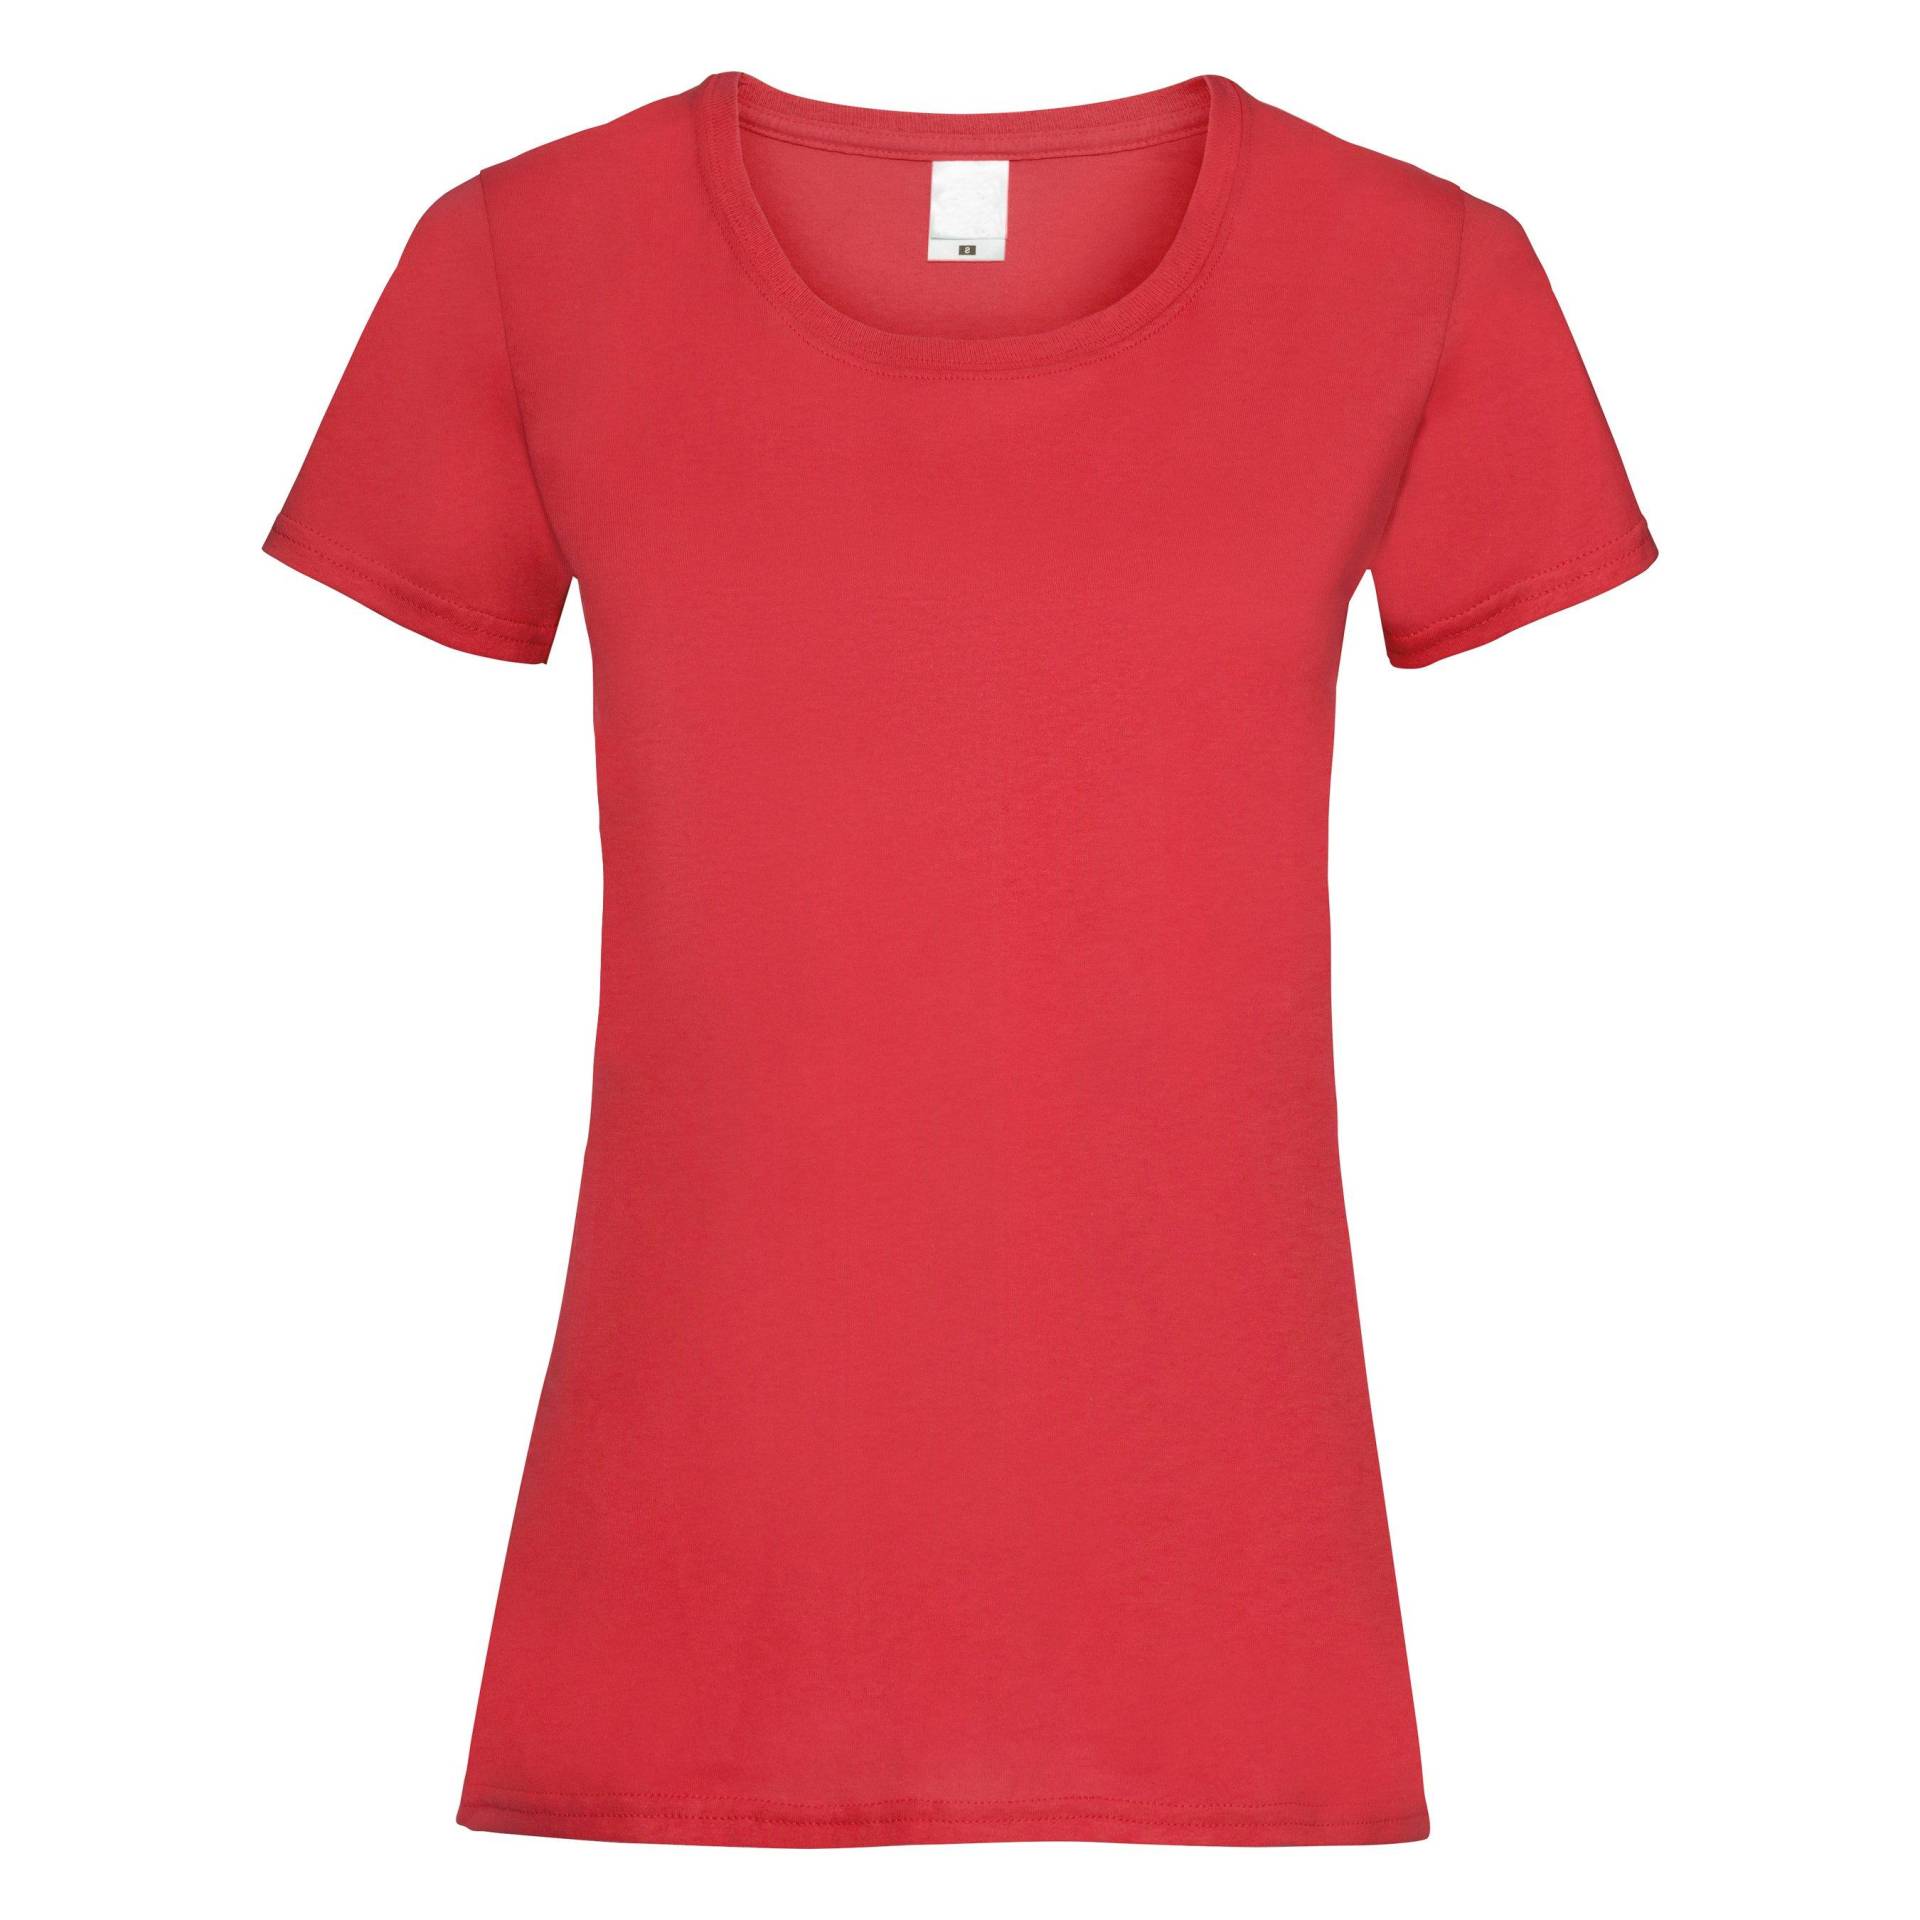 Kurzarm Tshirt Damen Rot Bunt S von Universal Textiles